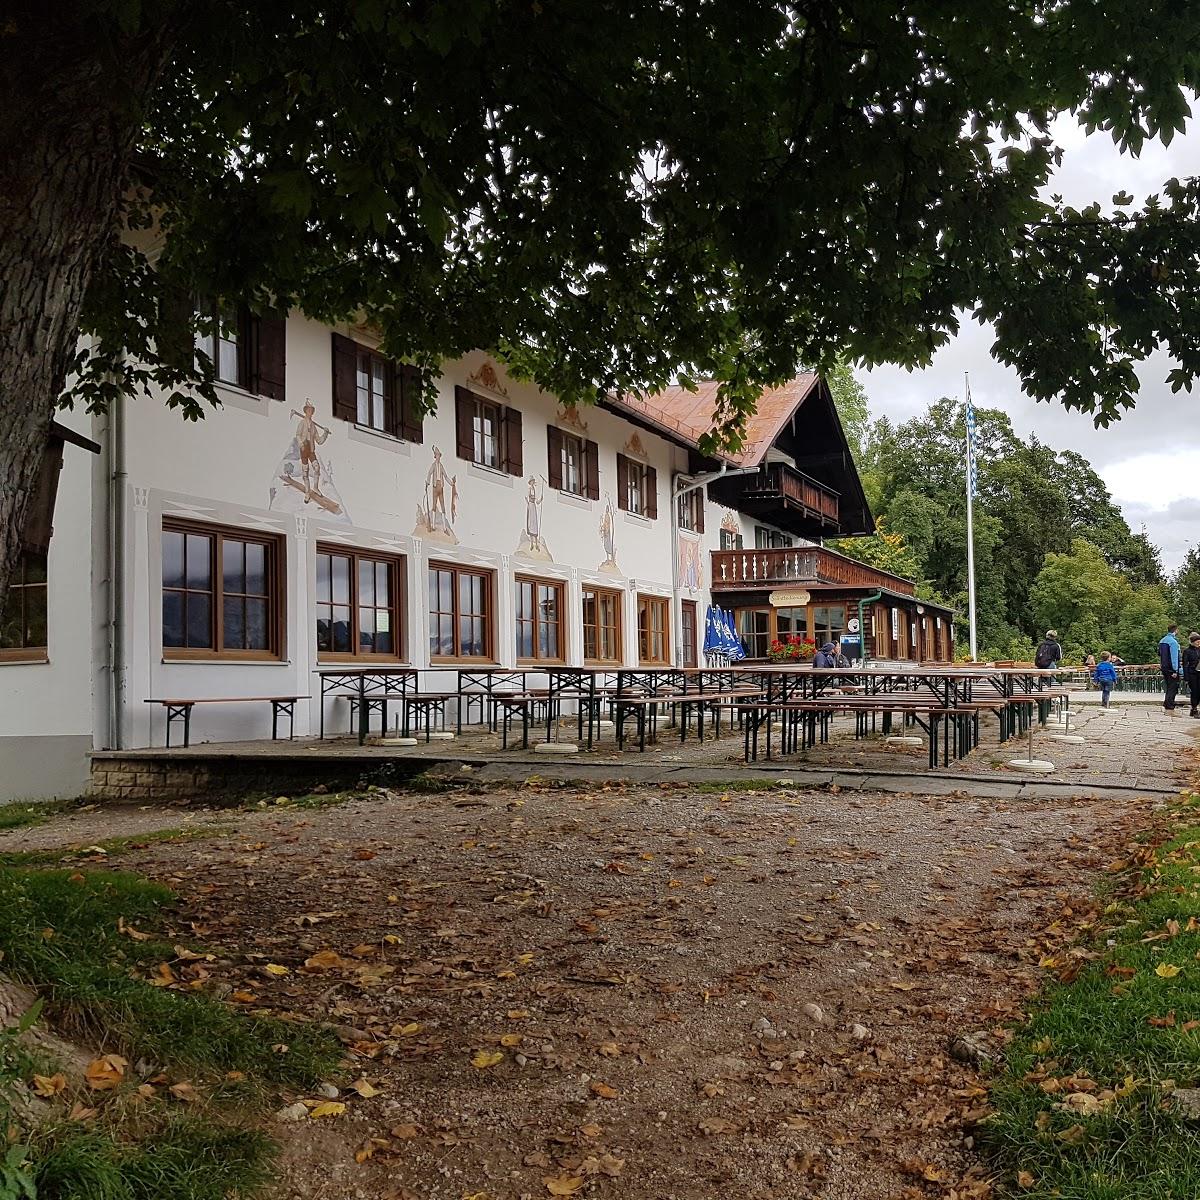 Restaurant "Berggasthof Eckbauer" in Garmisch-Partenkirchen